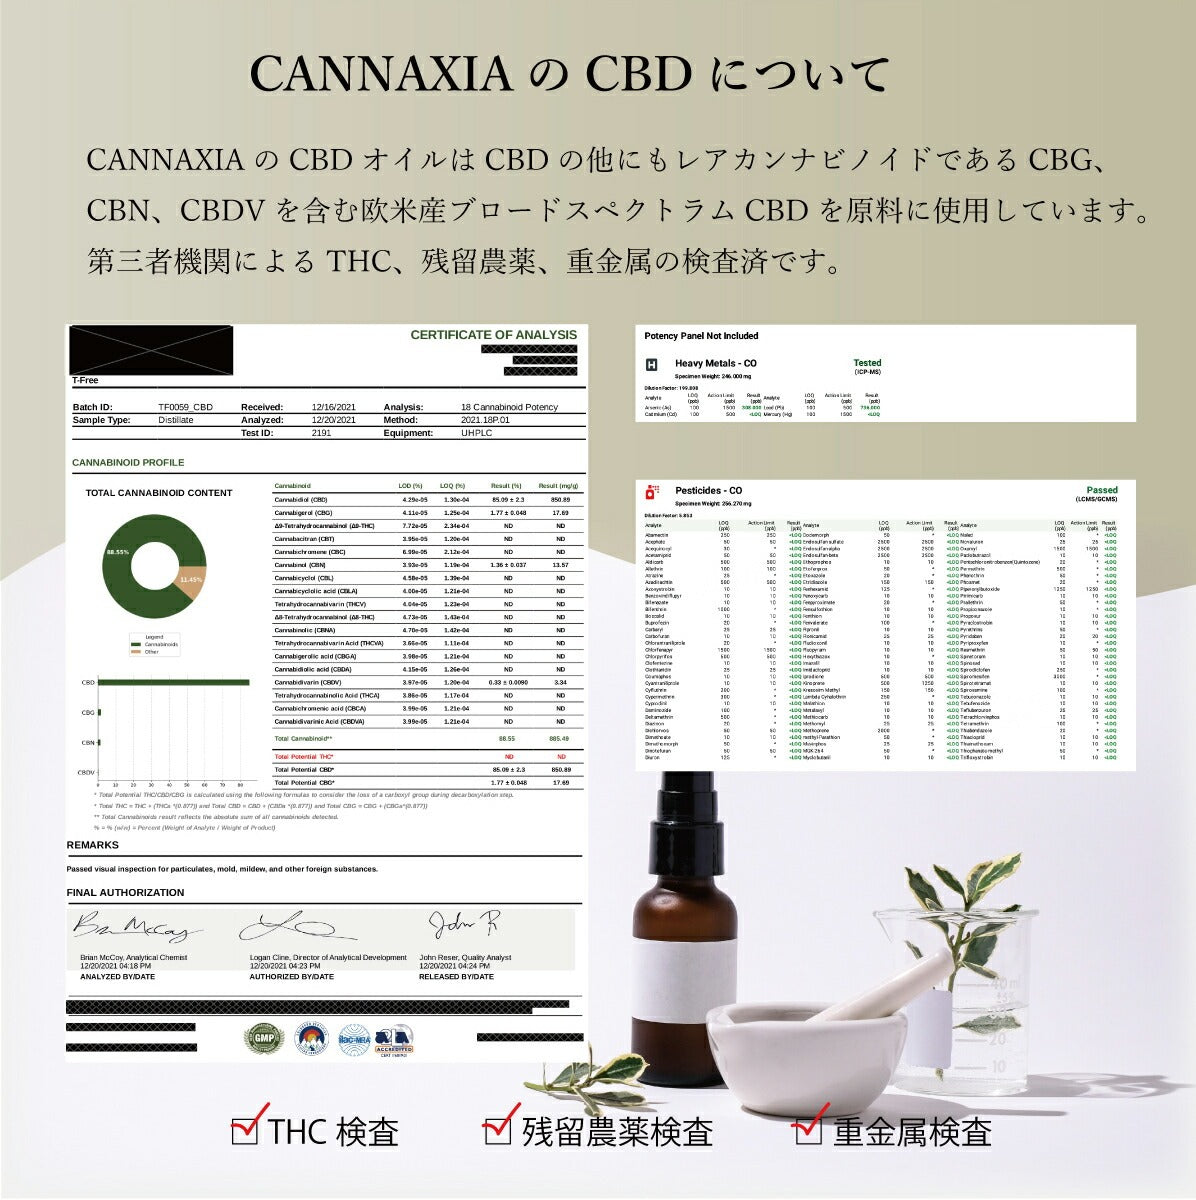 CANNAXIA カンナシア CBDオイル ブロードスペクトラム 高濃度5% 500mg配合 容量 10ml 日本製